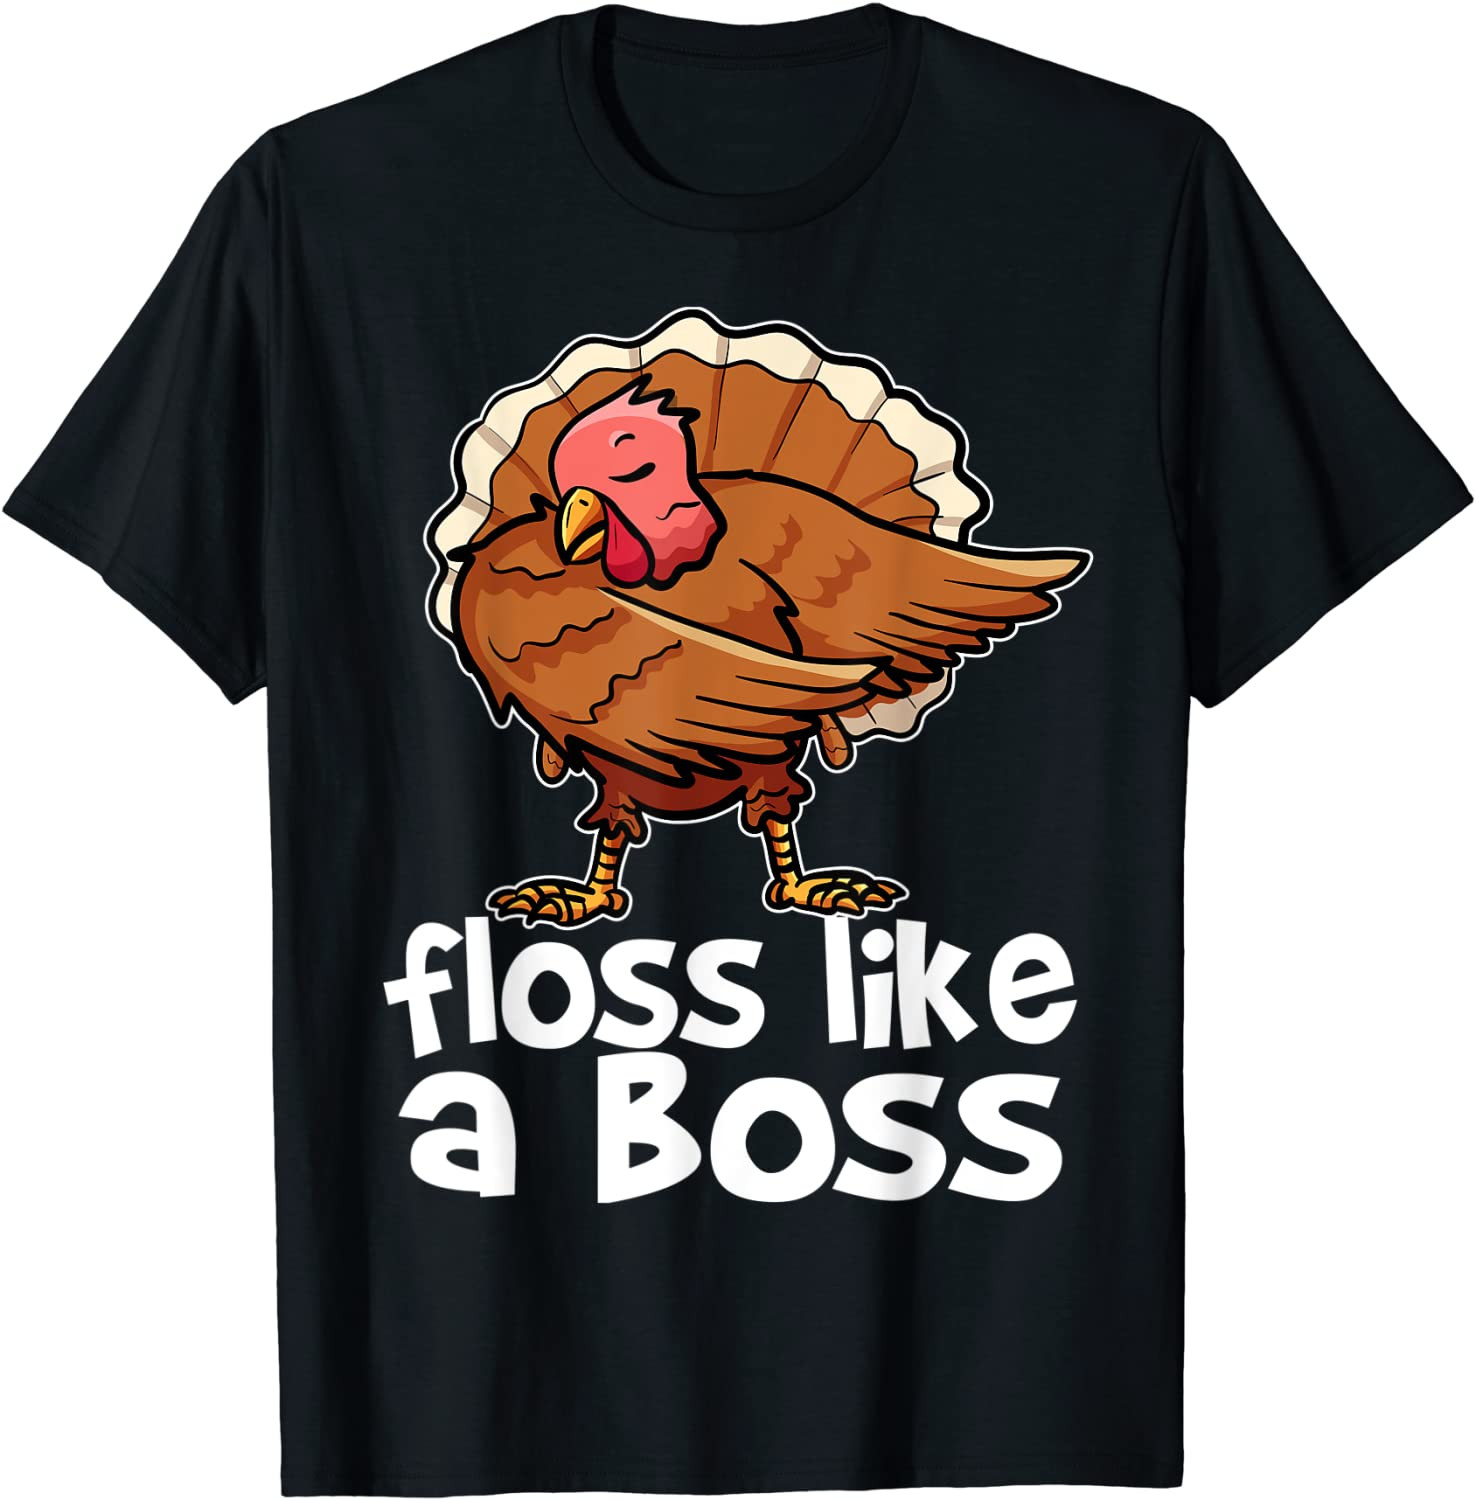 Thanksgiving Turkey Floss Like A Boss Dance T-Shirt